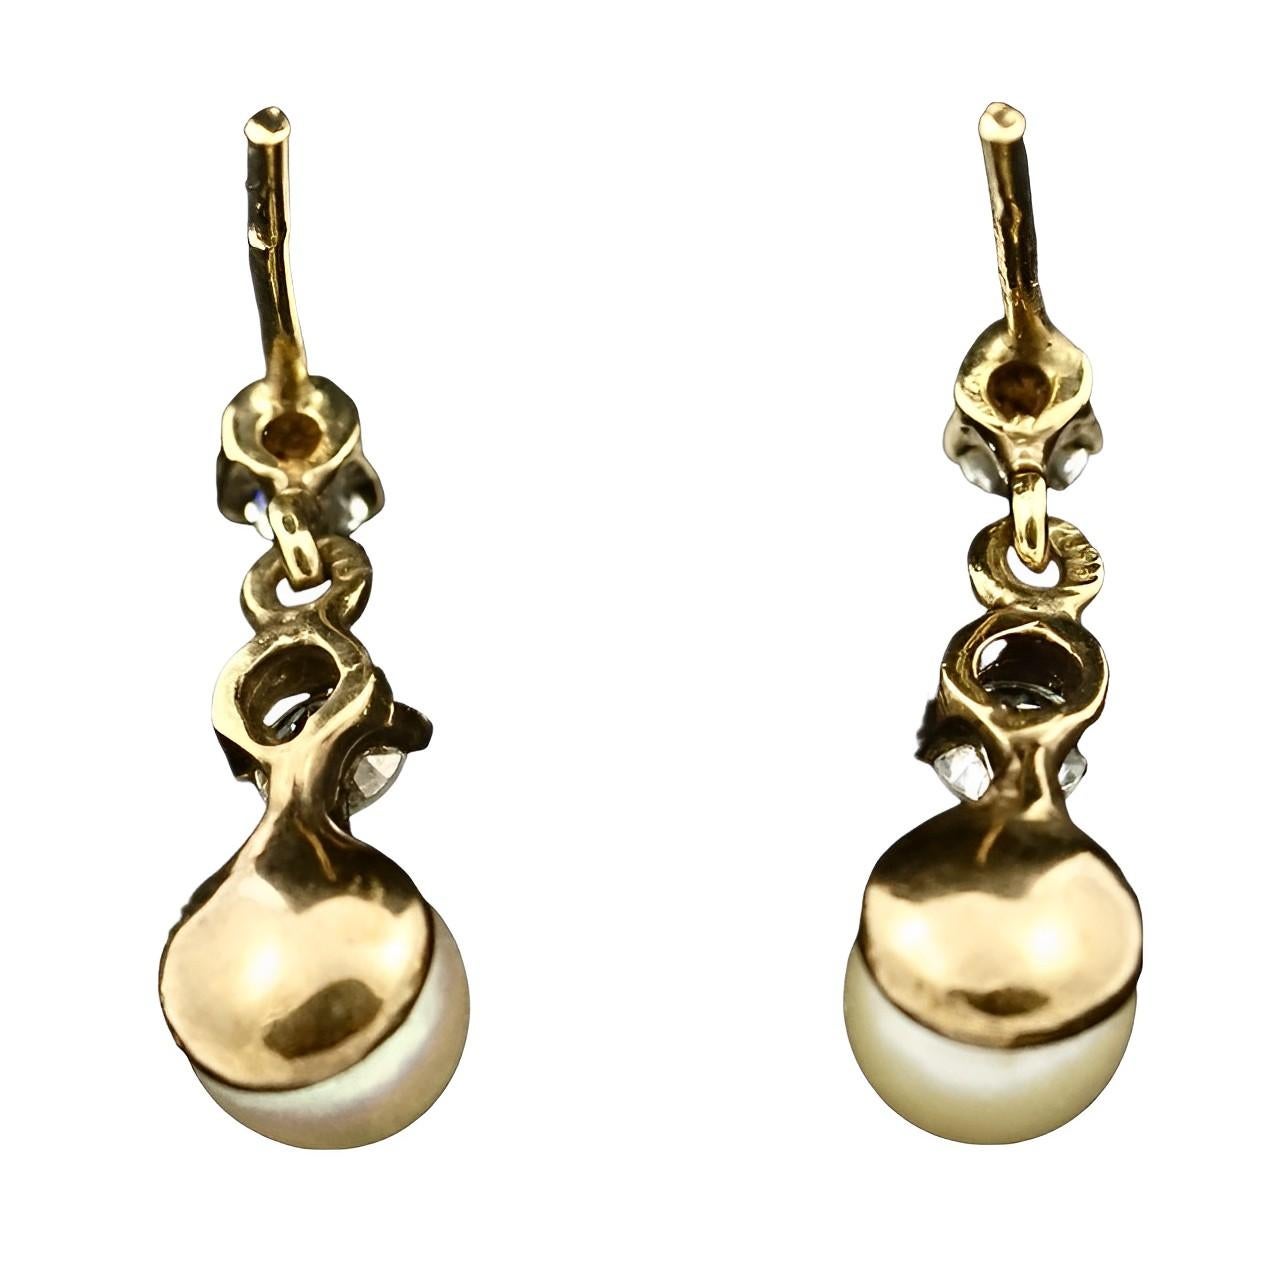 Ravissantes boucles d'oreilles pendantes en or 9K avec perles de culture crème et strass. Longueur 1,6 cm, perles de 5,5 mm. Les boucles d'oreilles sont munies de boucles papillon de remplacement en or 14K.

Il s'agit d'une paire de boucles